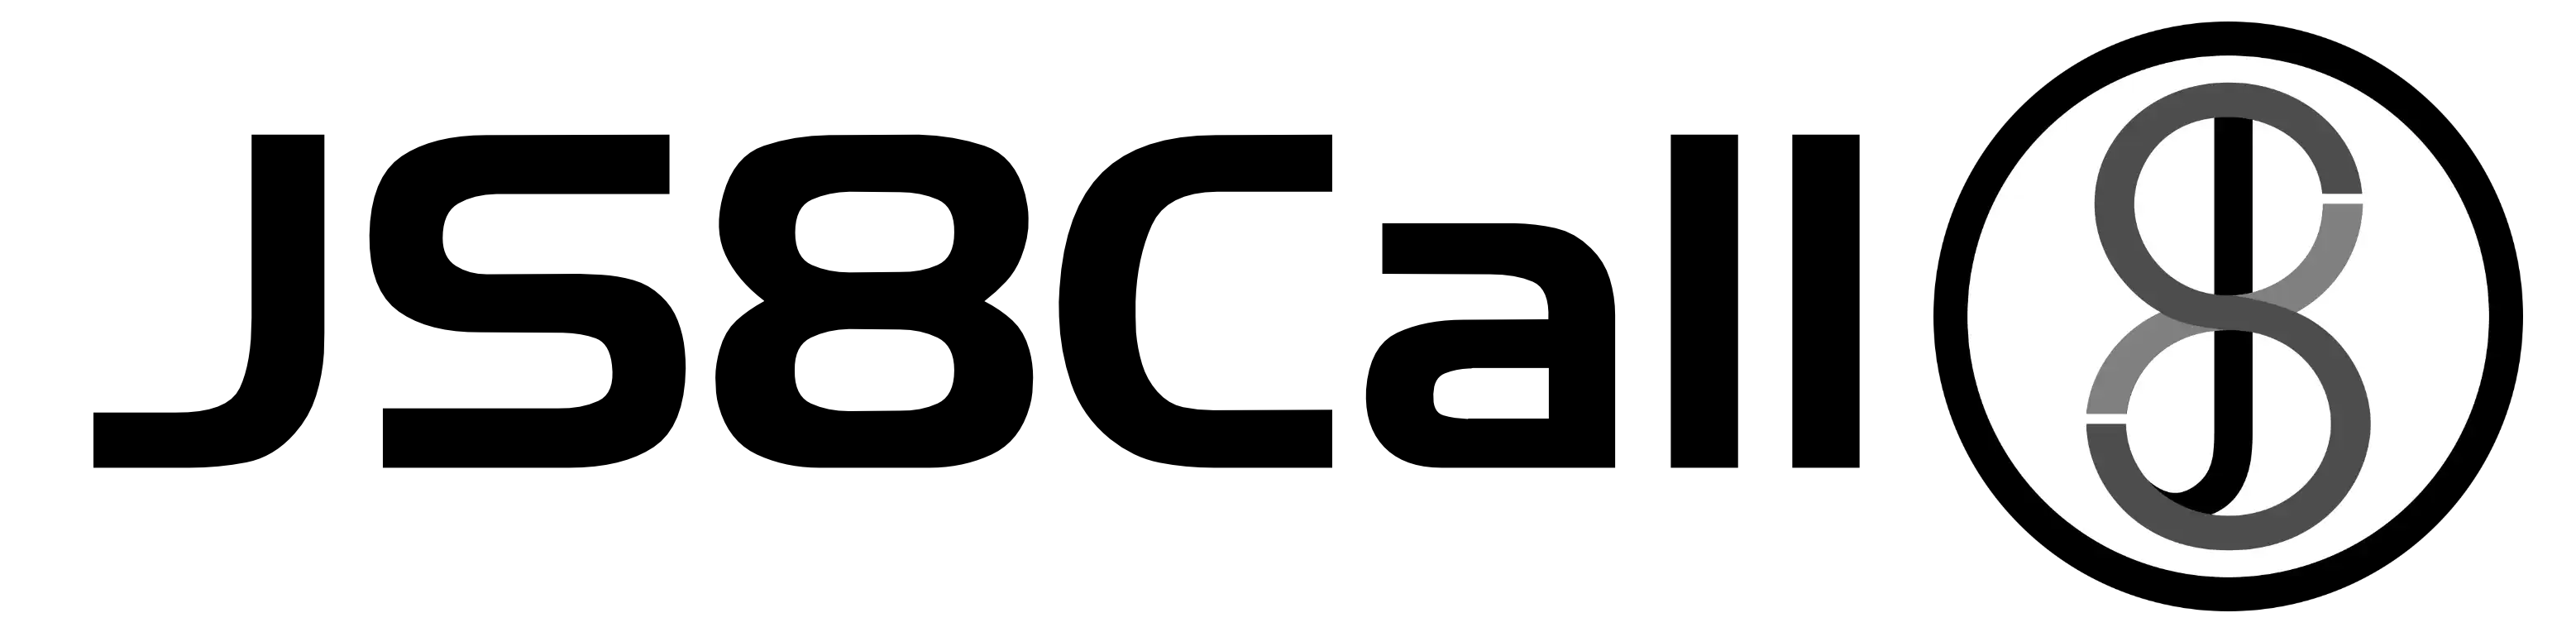 JS8Call logo